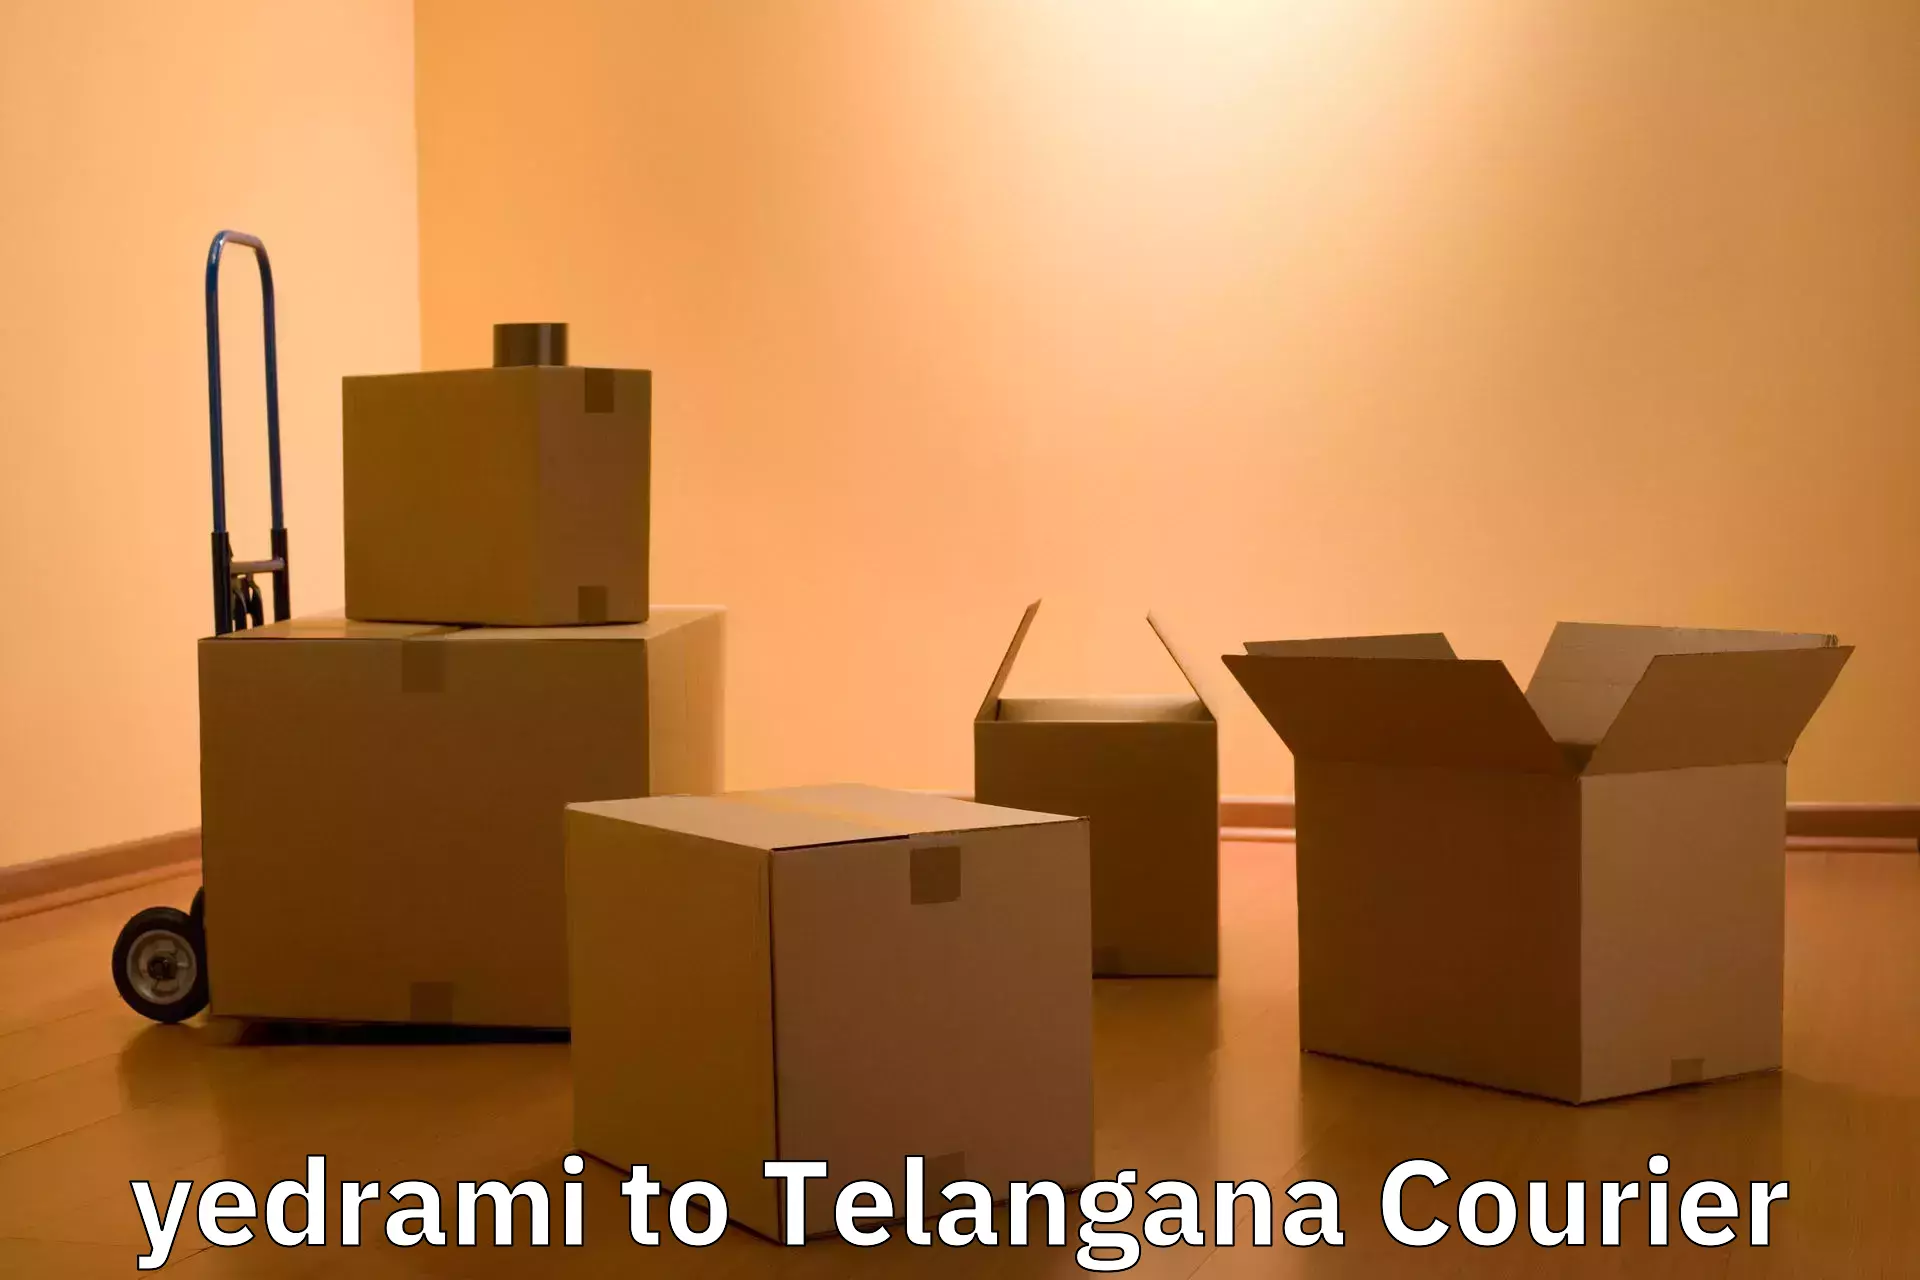 Baggage handling services yedrami to Telangana